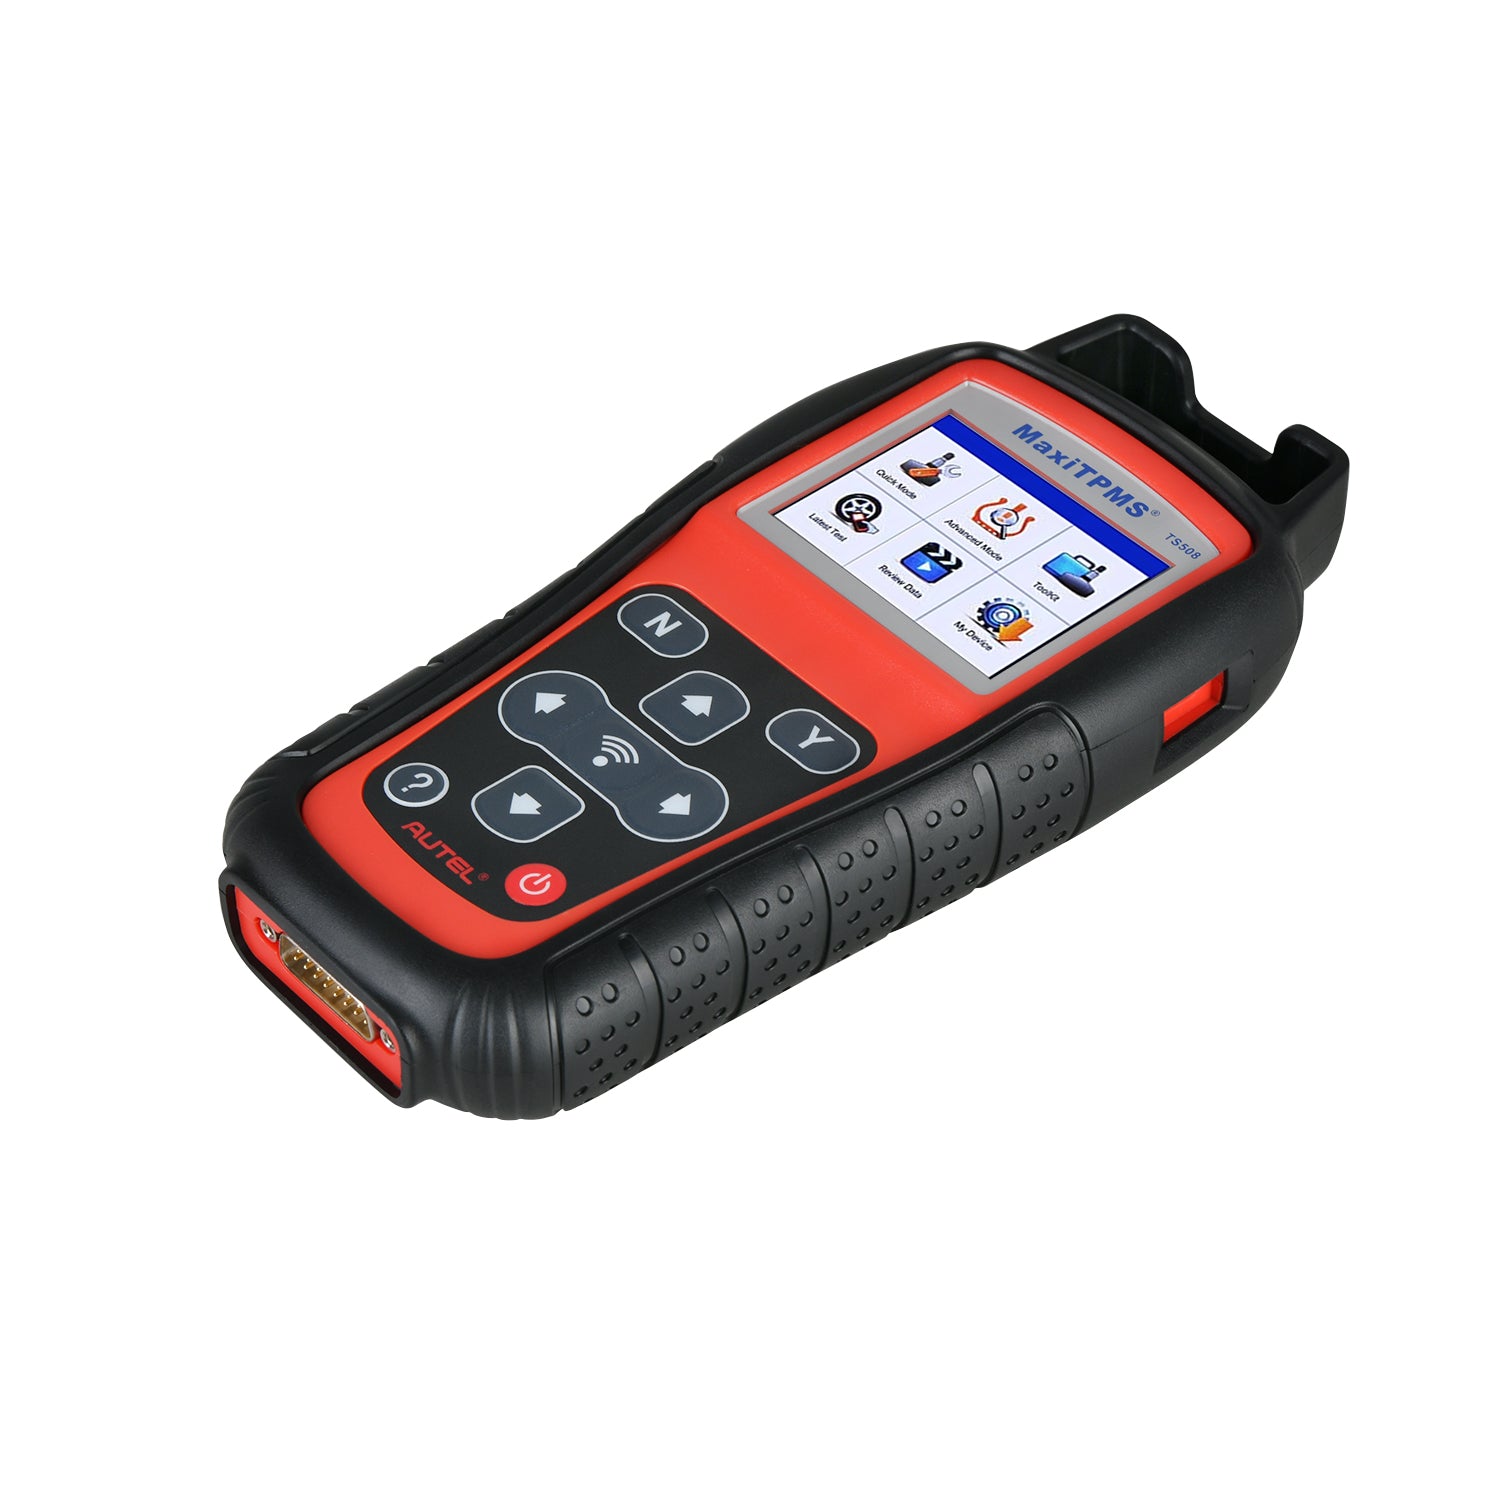 MaxiTPMS TS508 Autel TPMS Diagnostic & Service Tool Car Tire Pressure Monitoring System